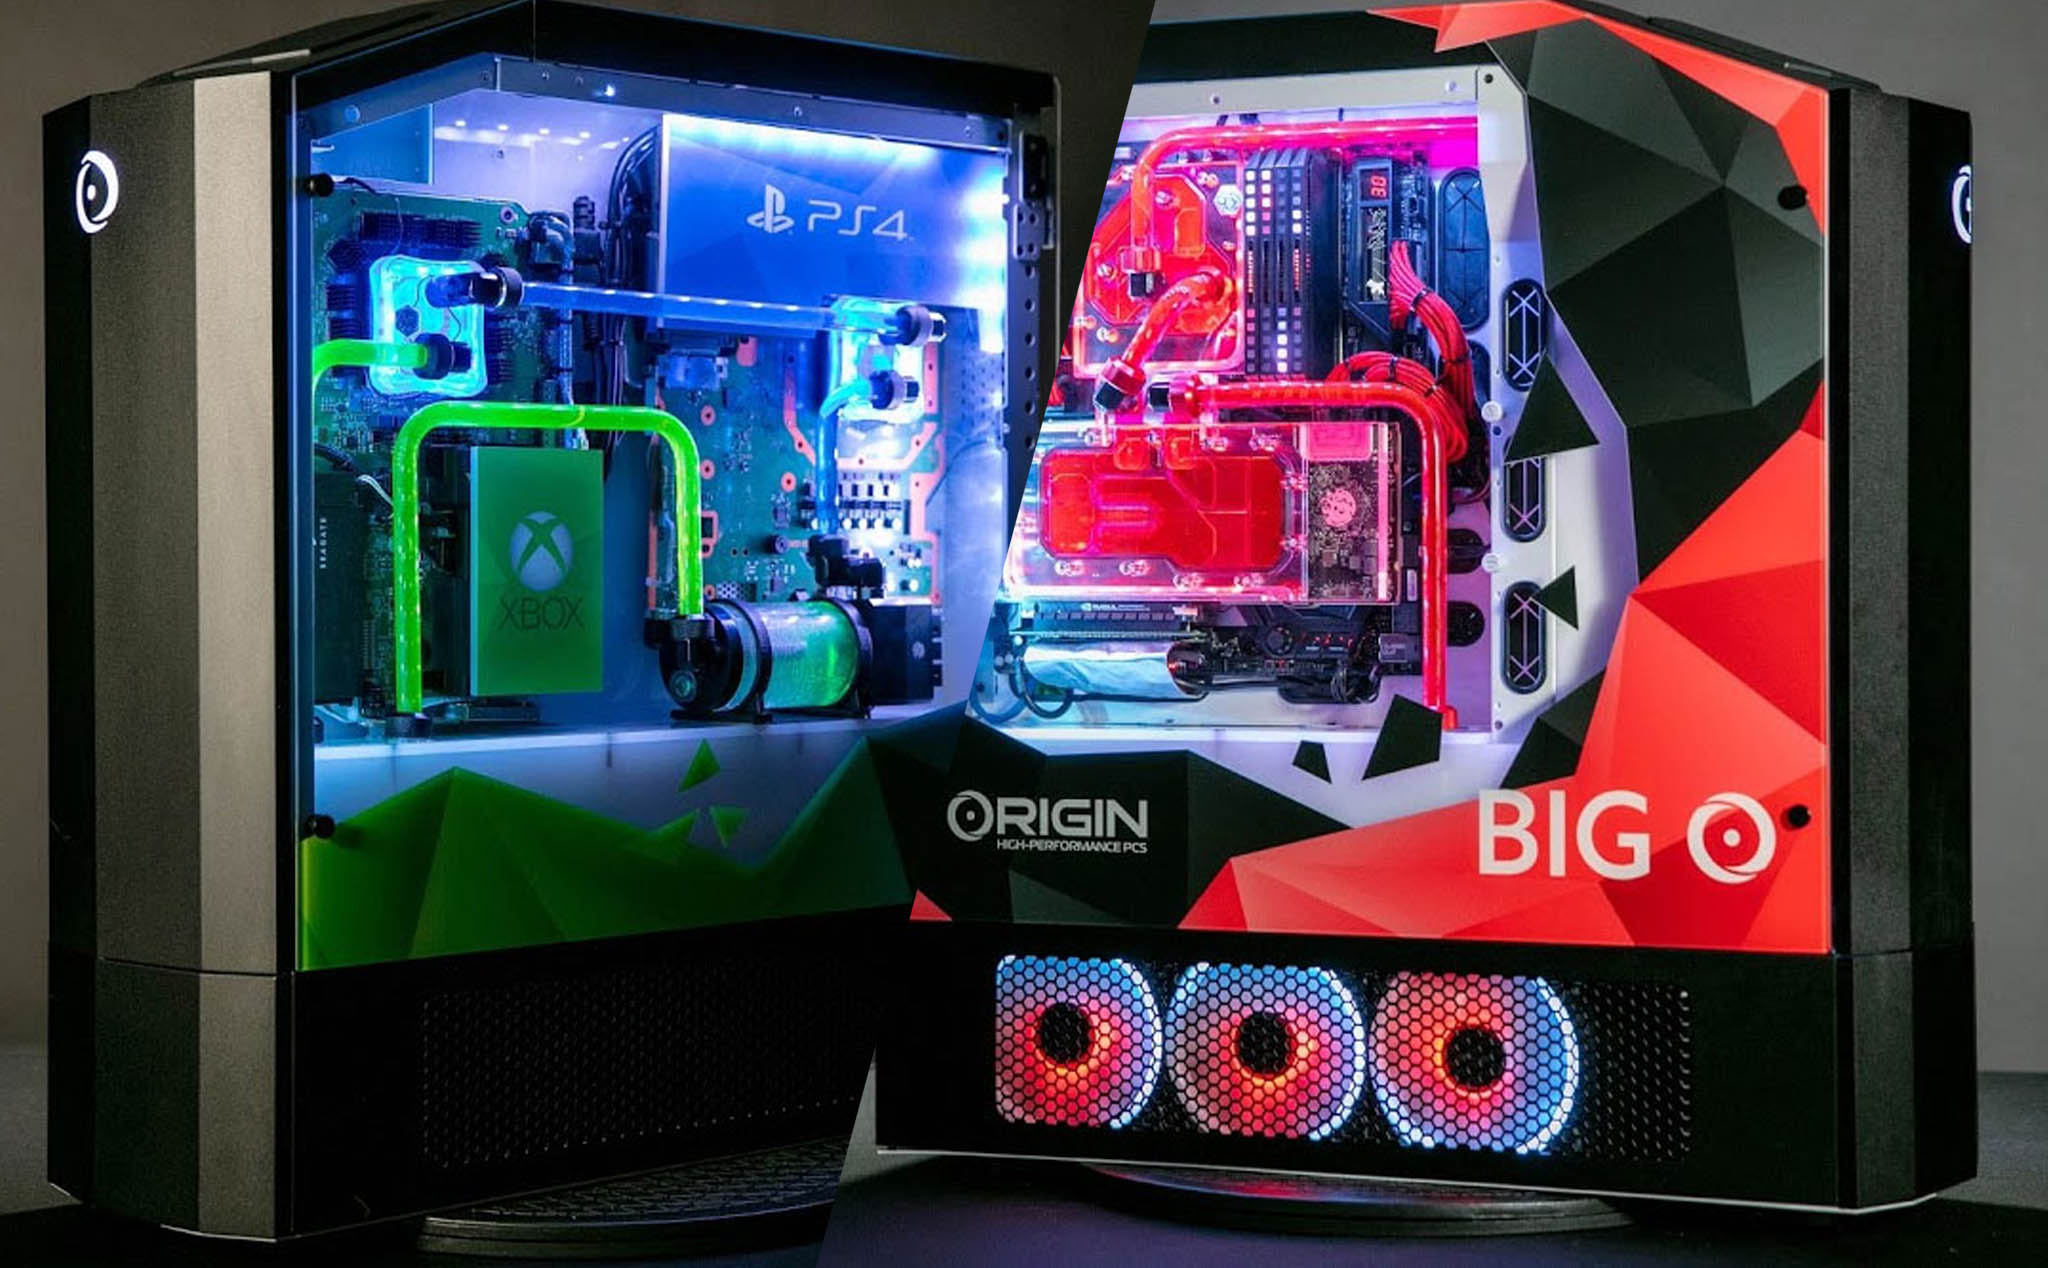 Origin Big O: Bên trong cái case này là cả PC, PS4 lẫn Xbox One làm mát bằng tản nước